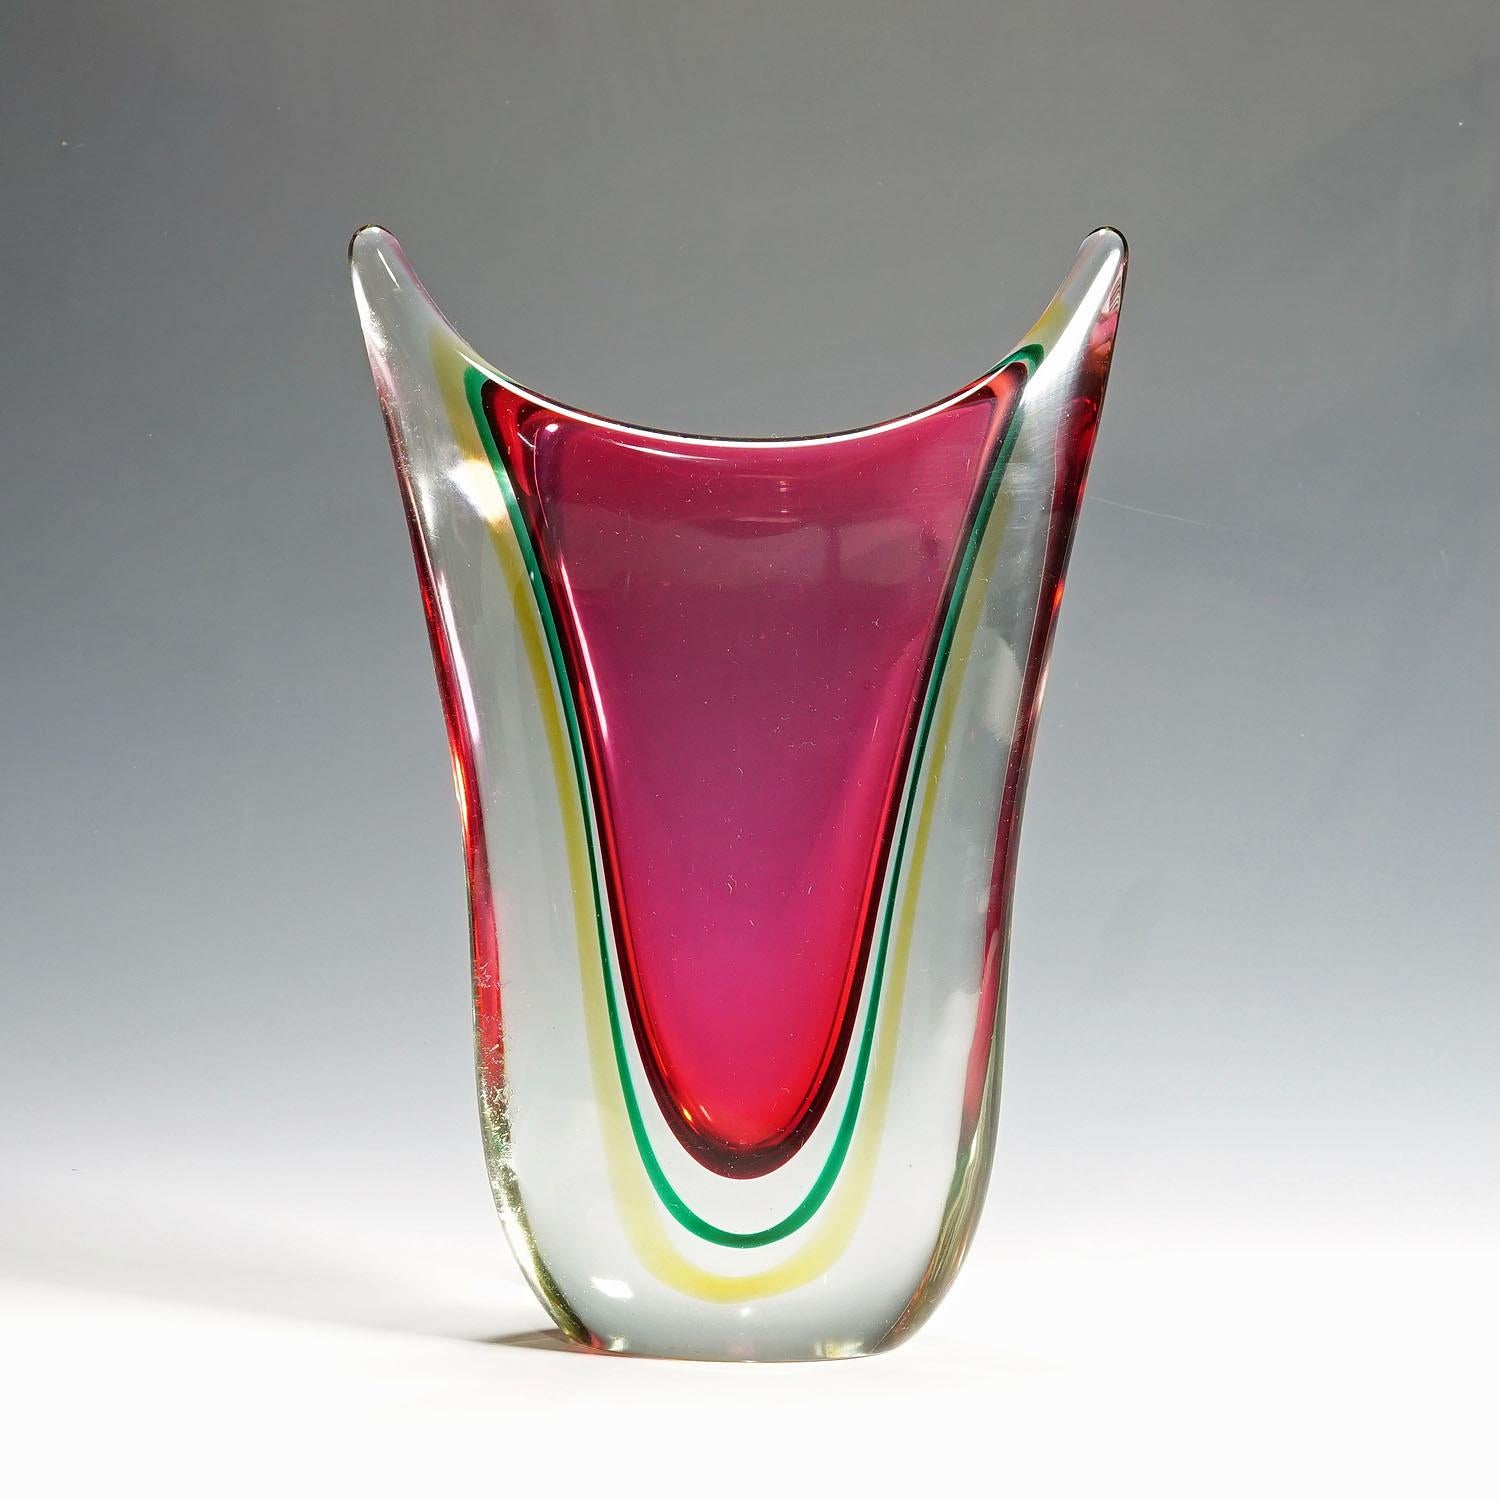 Vase en verre d'art de Murano sommerso du milieu du siècle par C.O.V.E.M., années 60

Un lourd vase en verre d'art Murano Sommerso fabriqué par C.I.V.E.M. (Cooperativa Vetrai Muranesi) vers les années 1960. Il s'agit probablement d'un dessin de